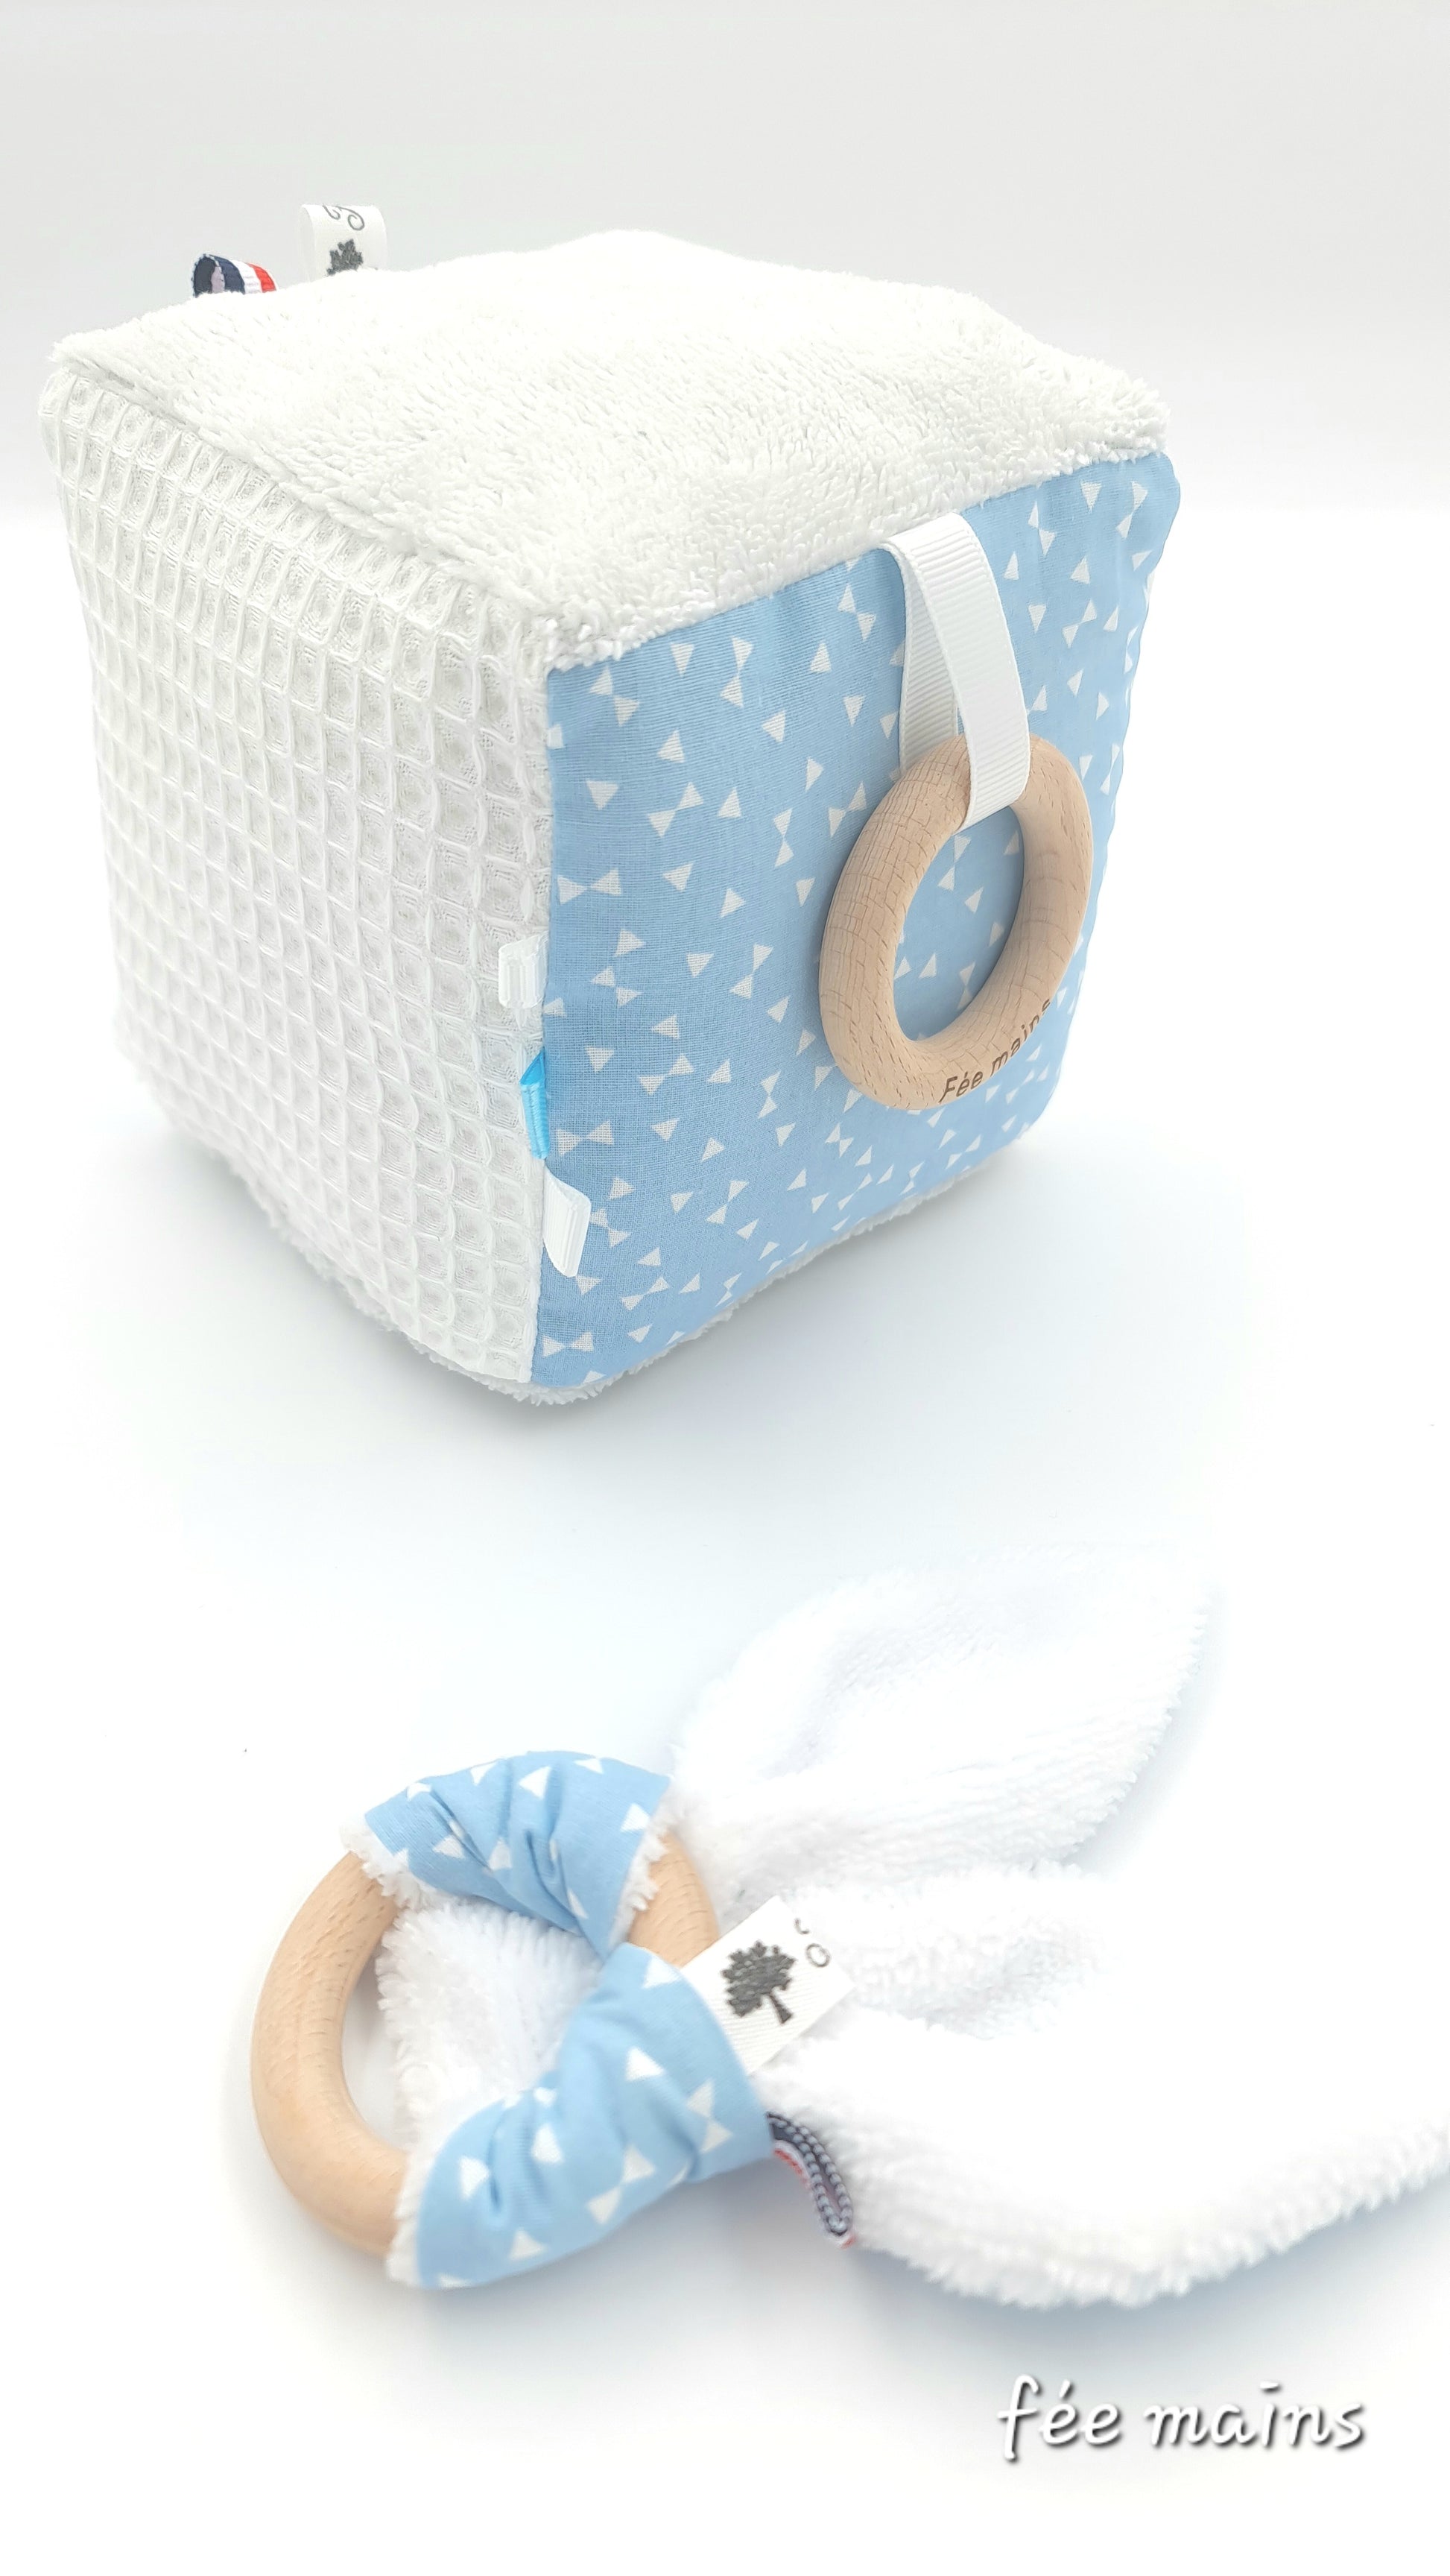 Ensemble cube d'éveil sensoriel bébé en tissu et son anneau de dentition labelisé Oeko-Tex - Fée Mains